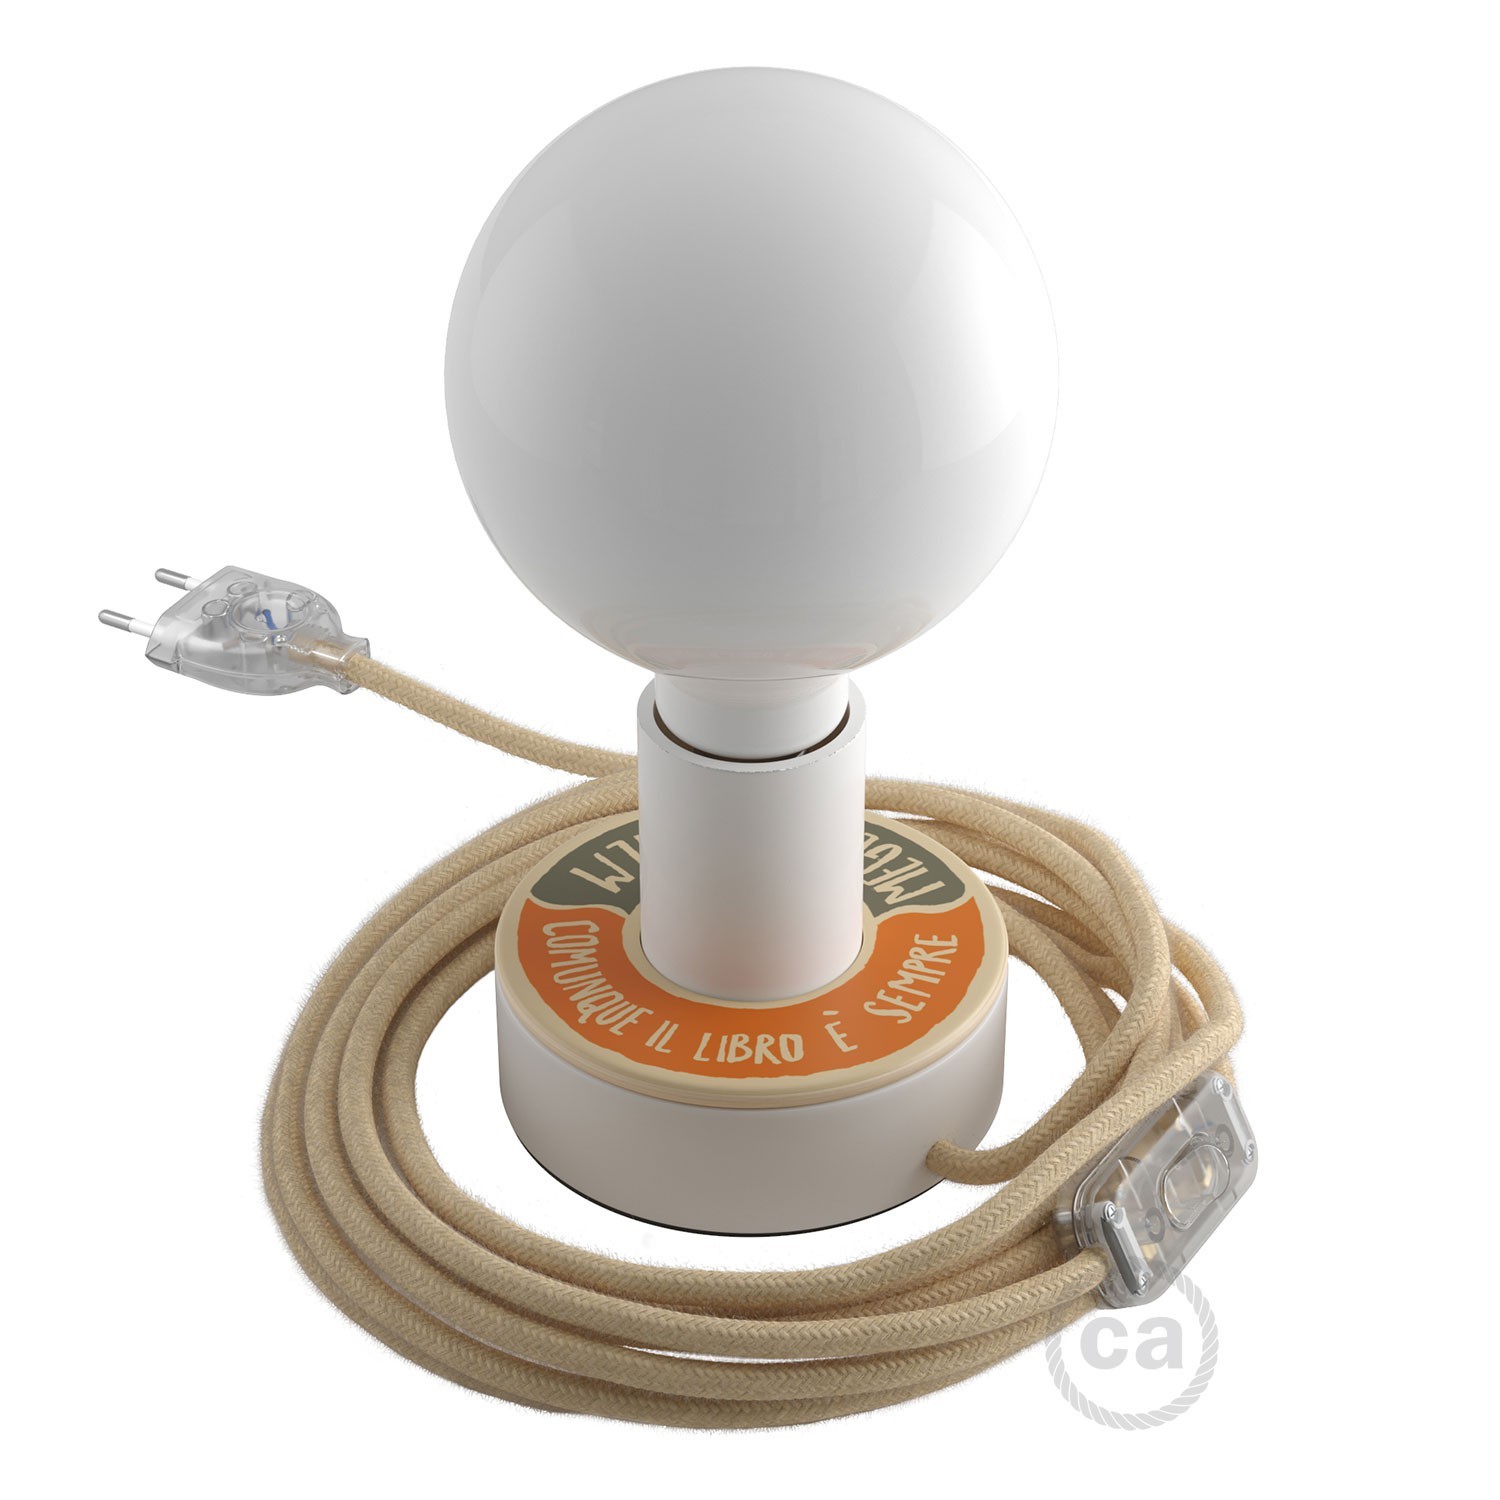 Lampe Posaluce MINI-UFO en bois double face PALLE DA LETTURA, avec câble textile, interrupteur et prise bipolaire